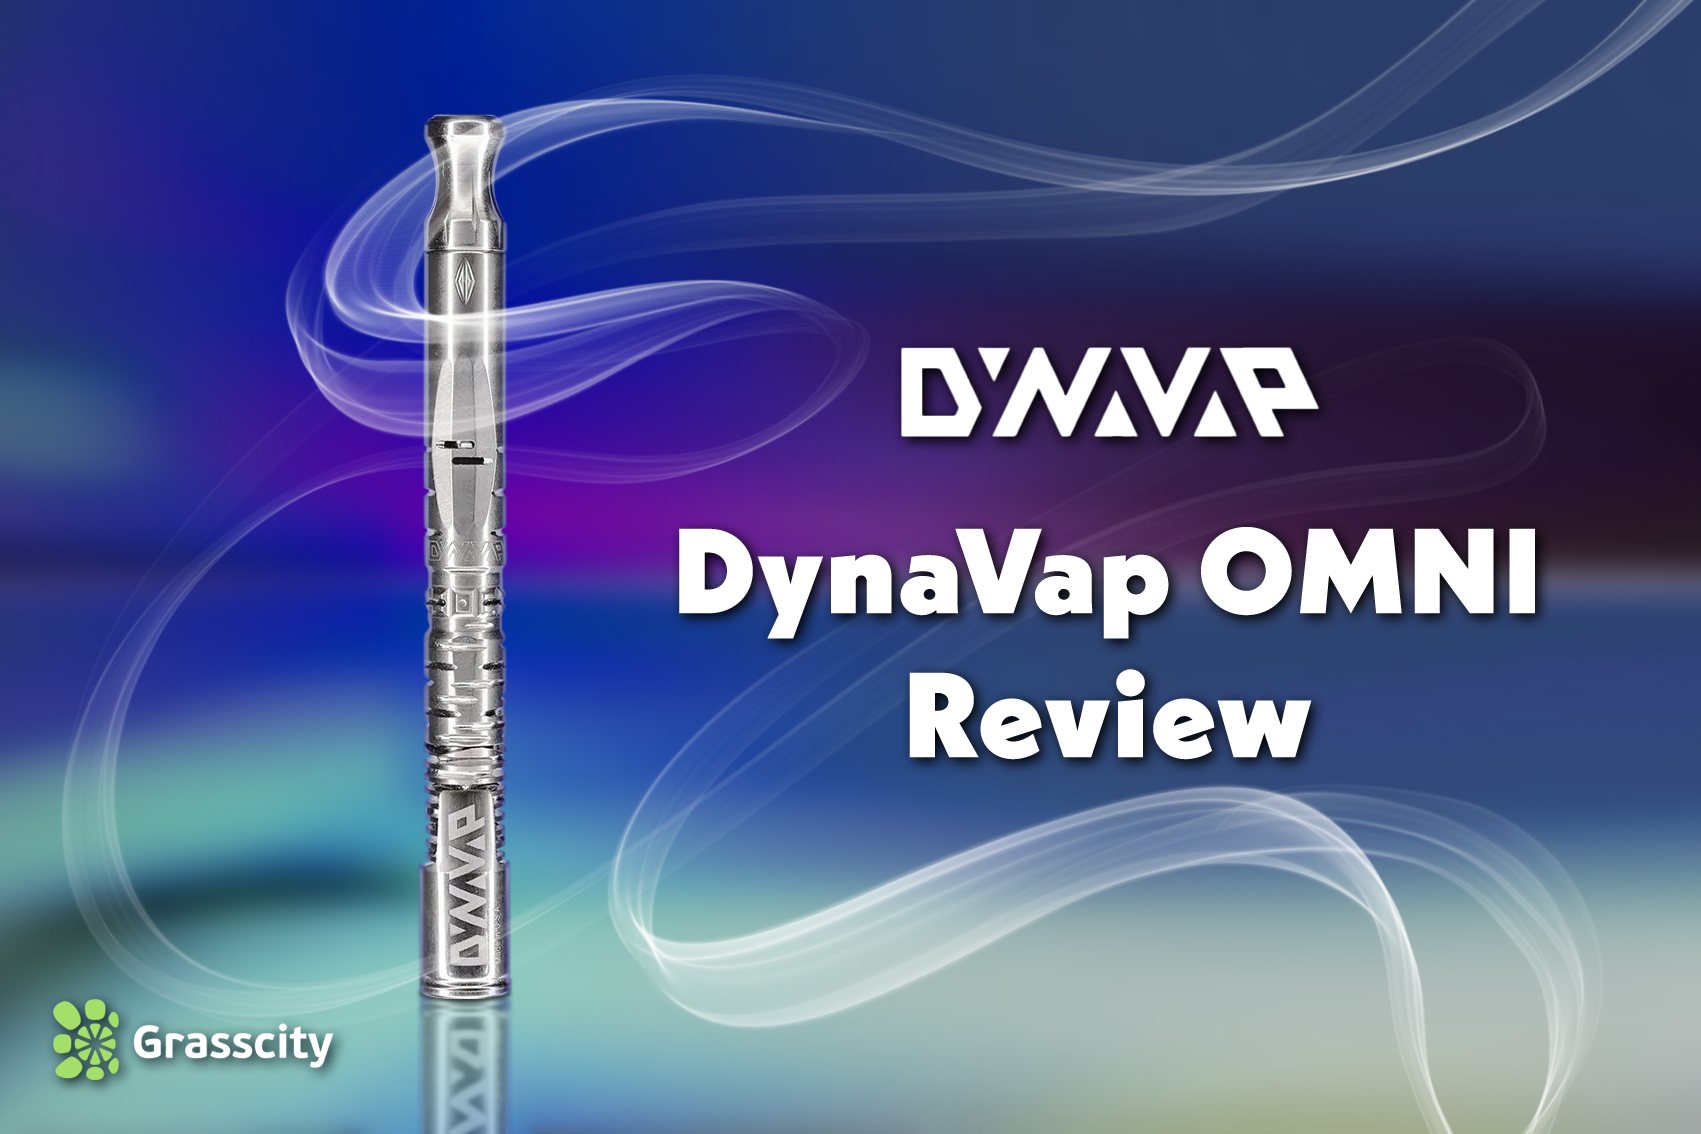 Dynavap Omni Review